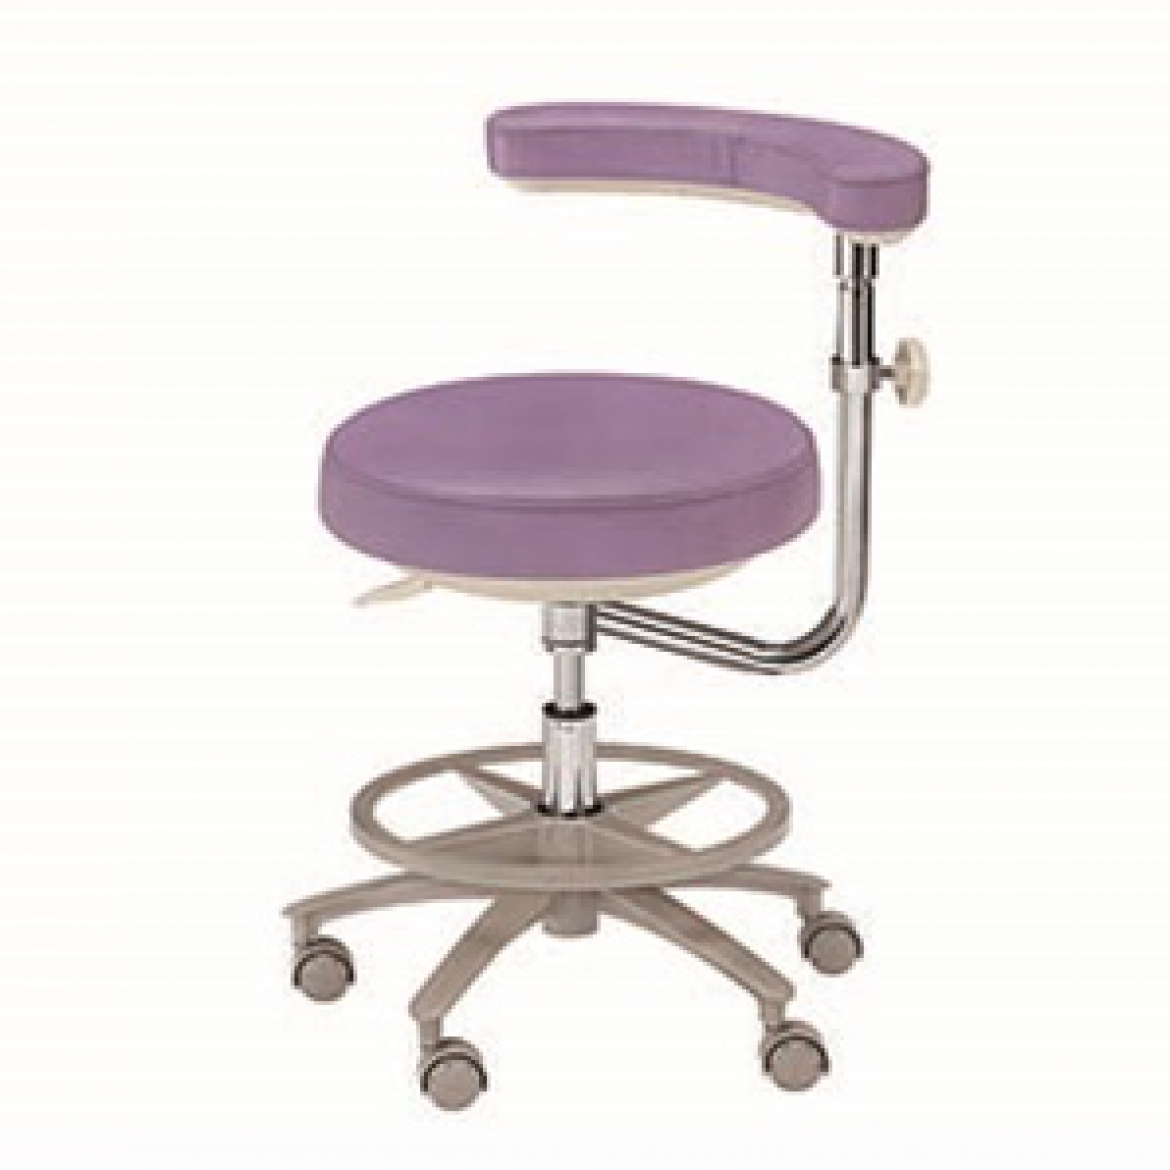 Стоматологические стулья серии HS-7 Искусственная кожа.